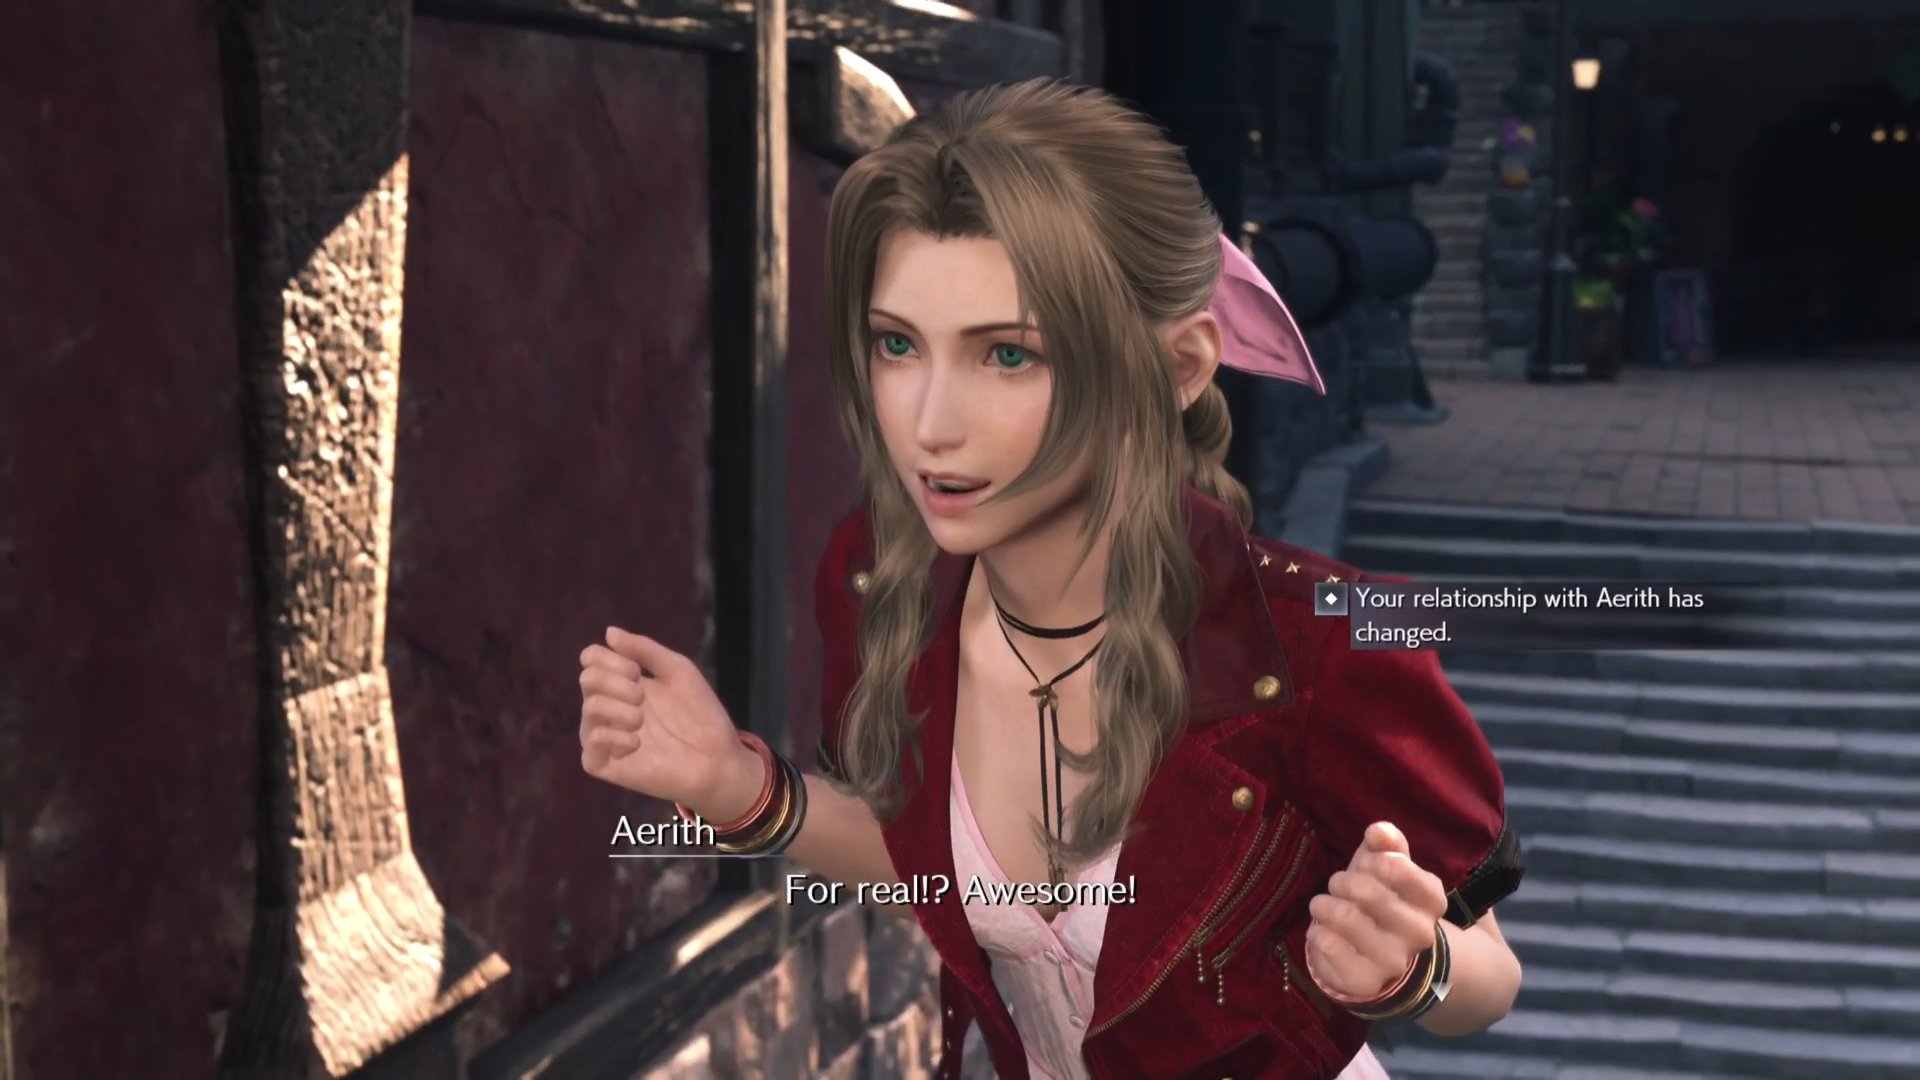 Final Fantasy 7 Vii Rebirth Aerith Relation Changement